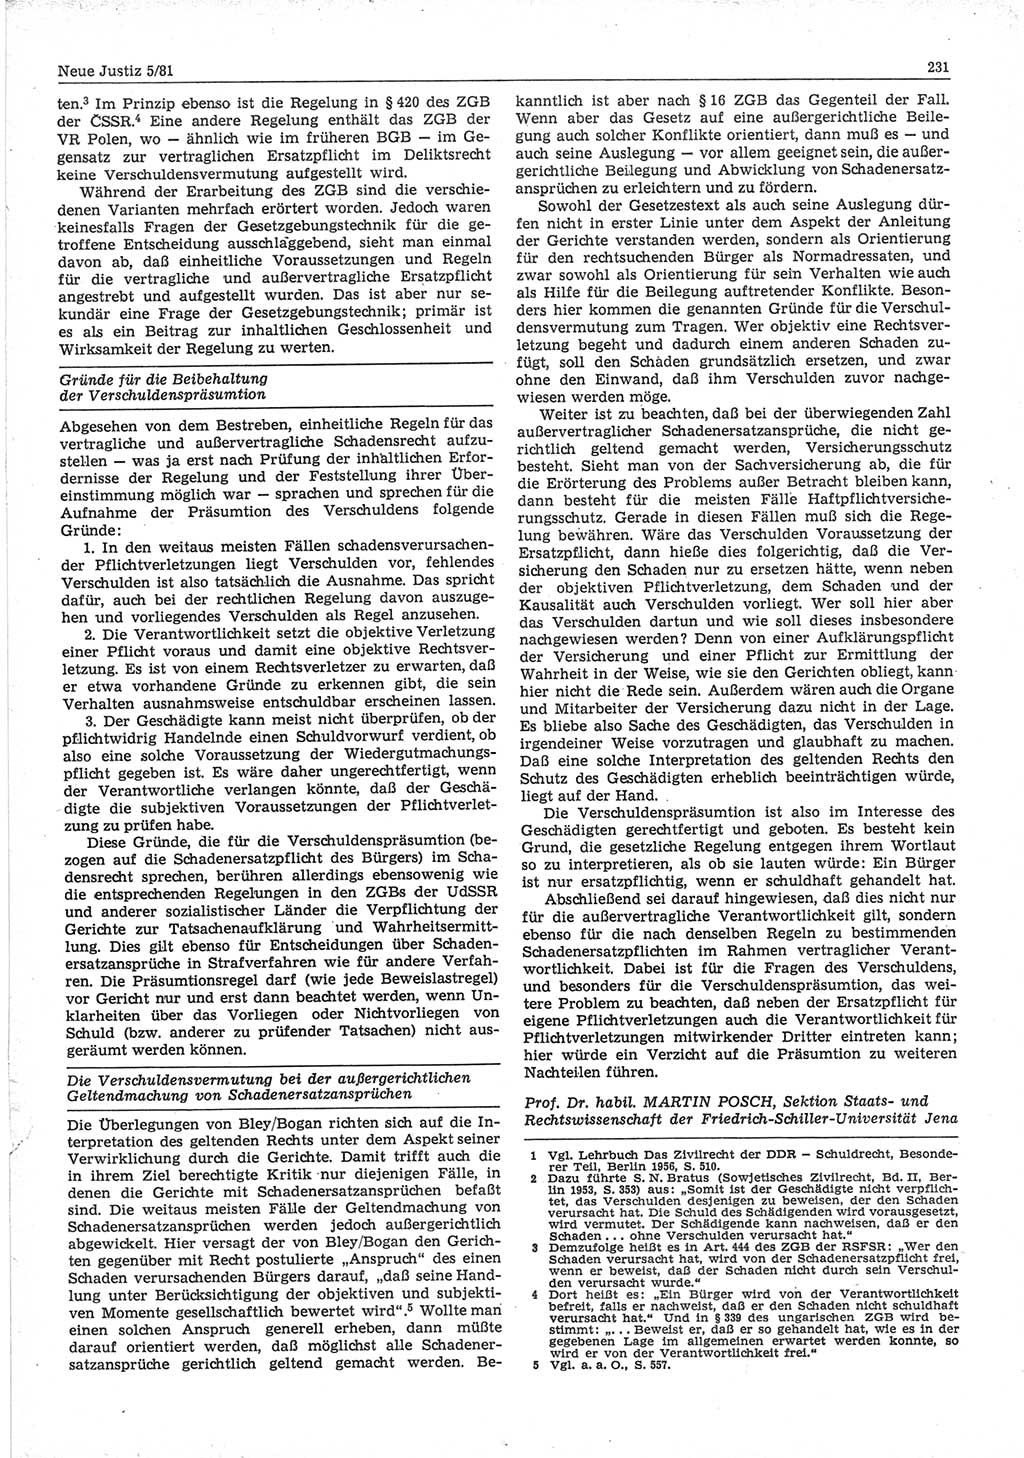 Neue Justiz (NJ), Zeitschrift für sozialistisches Recht und Gesetzlichkeit [Deutsche Demokratische Republik (DDR)], 35. Jahrgang 1981, Seite 231 (NJ DDR 1981, S. 231)